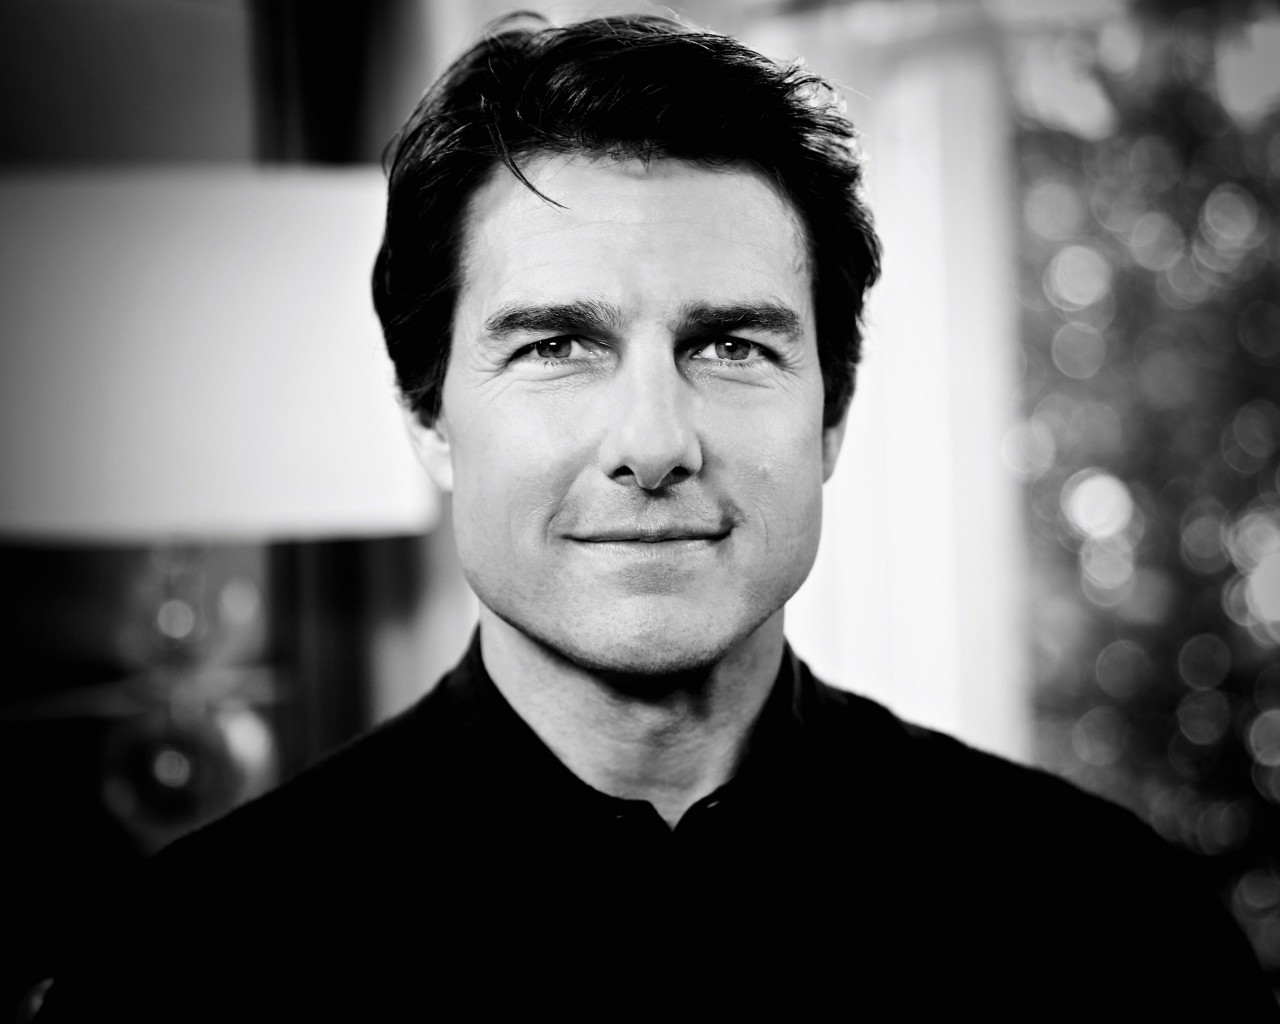 Tom Cruise Black & White Portrait Wallpaper for Desktop 1280x1024